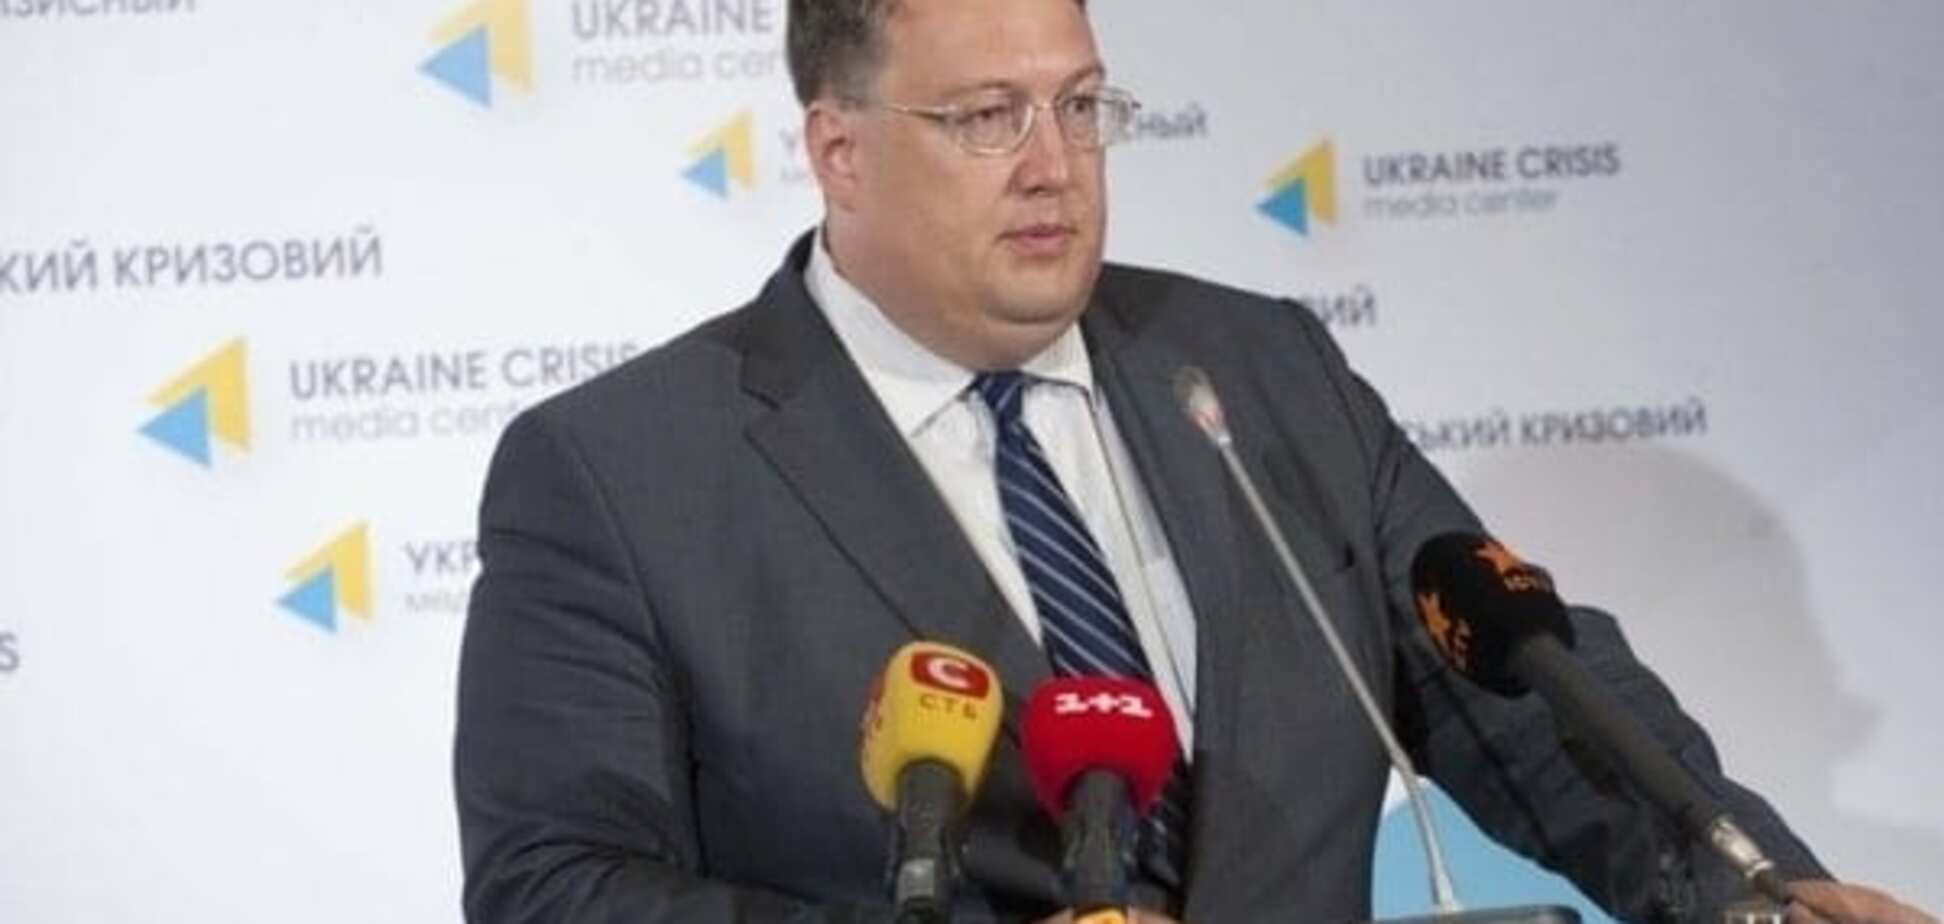 Геращенко: 'спецназ реформ' сможет сделать Украину передовой державой